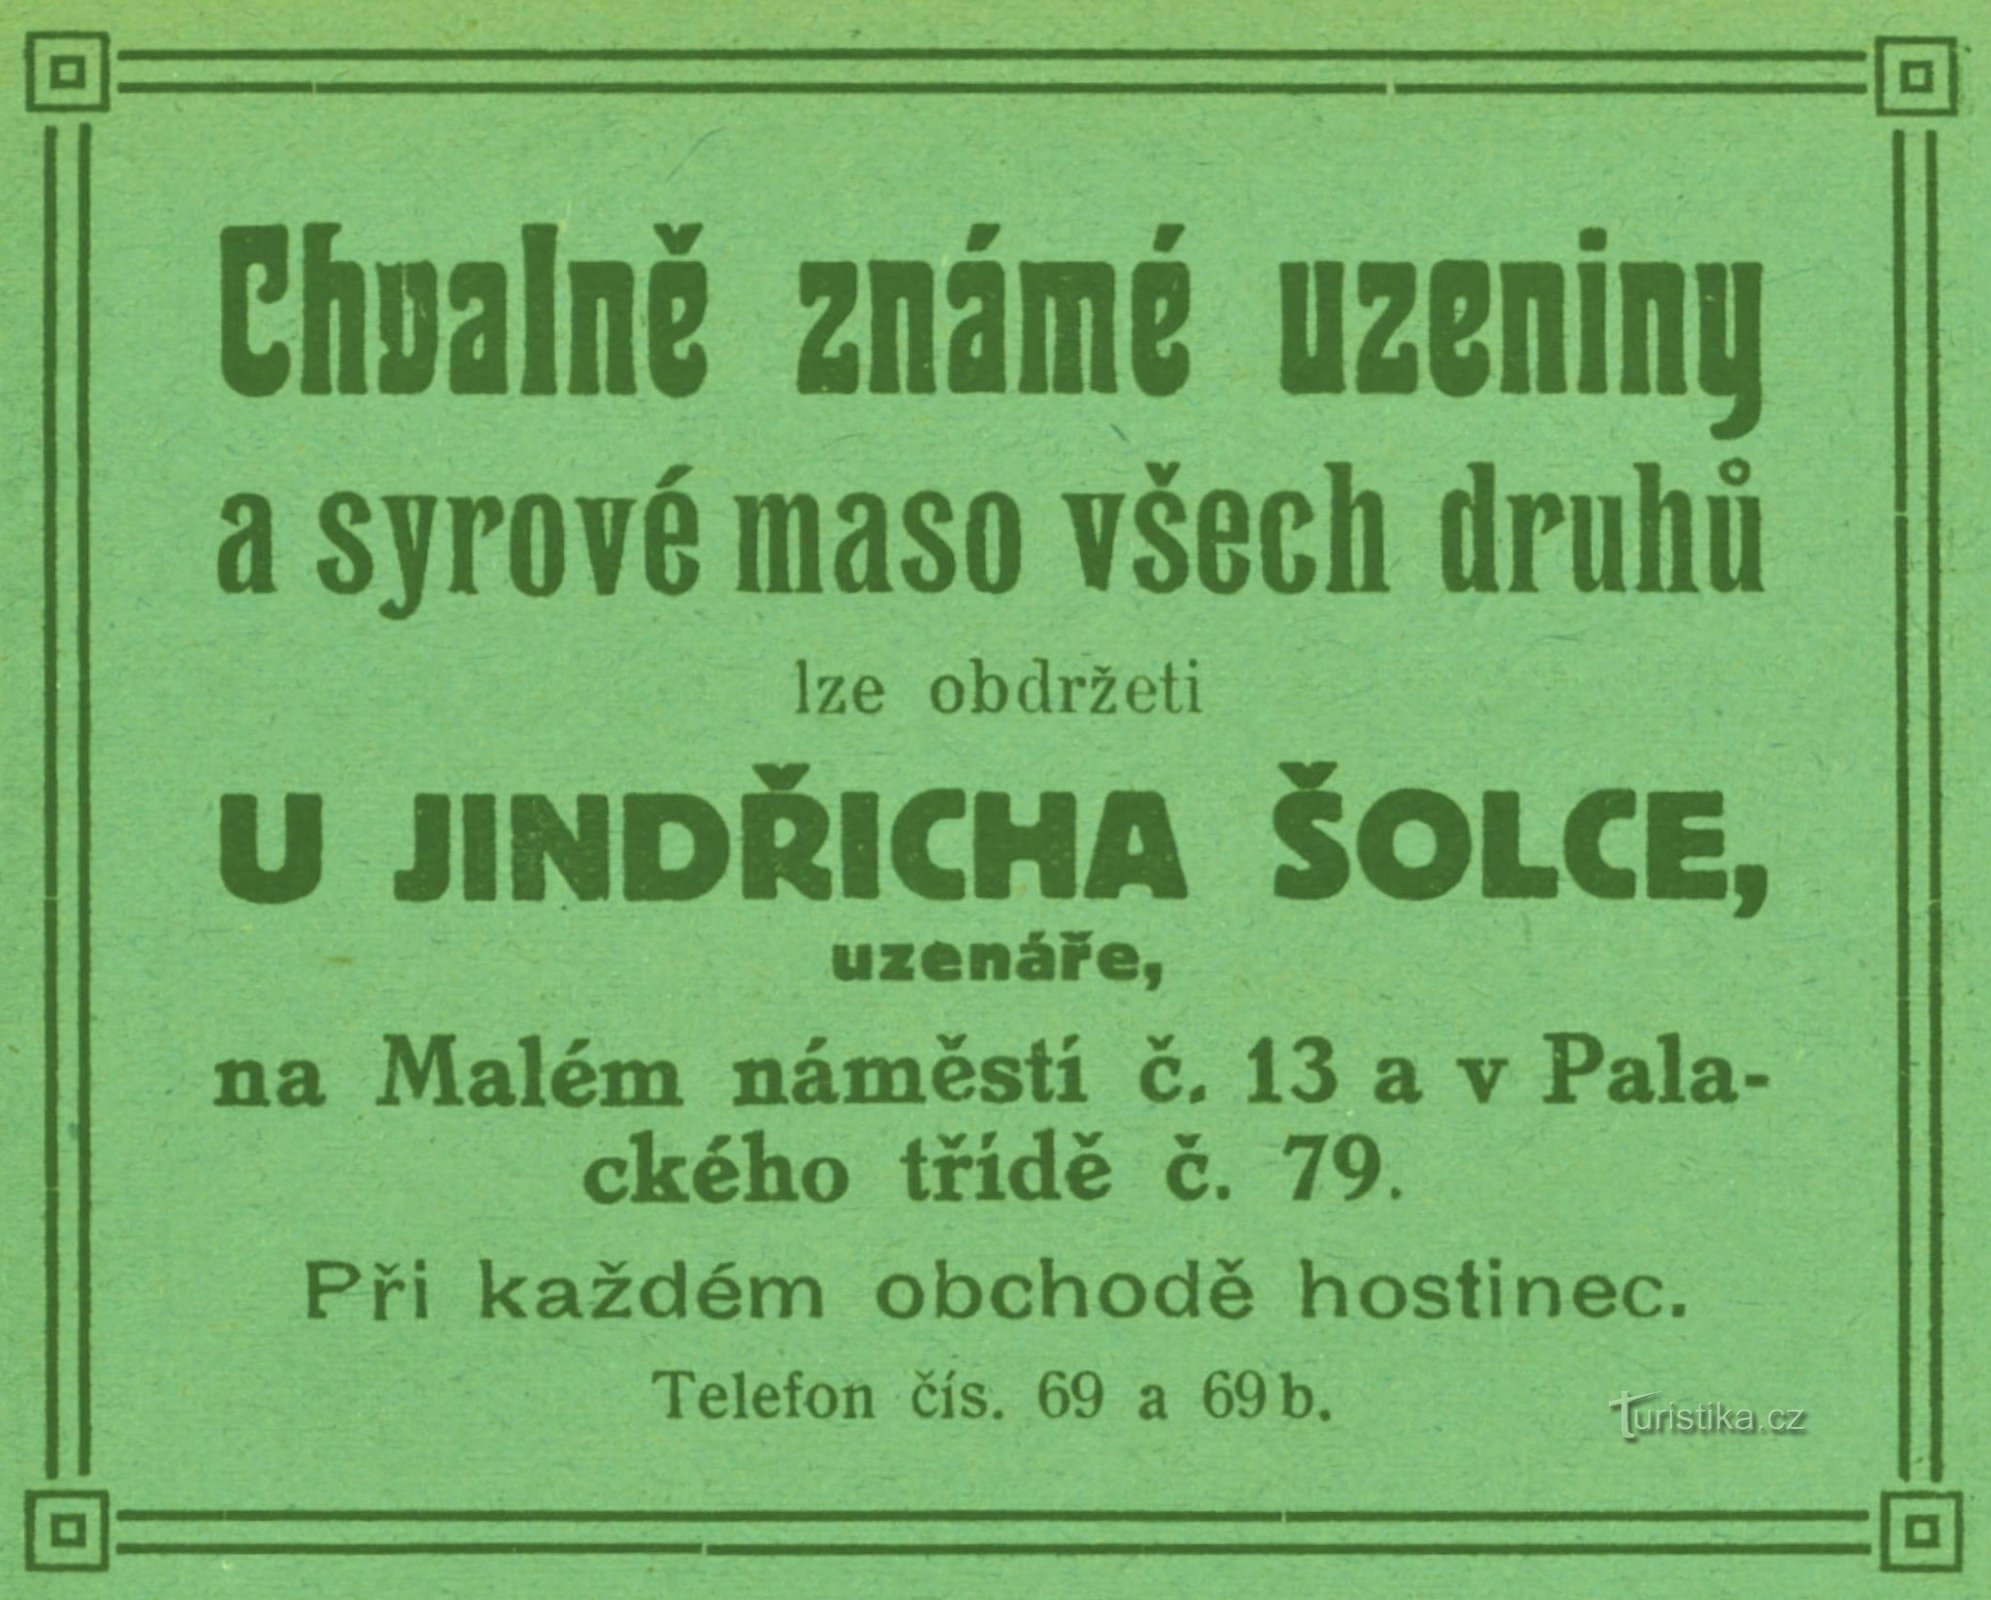 Reklama mesnice Jindřicha Šoleca iz 1911. godine